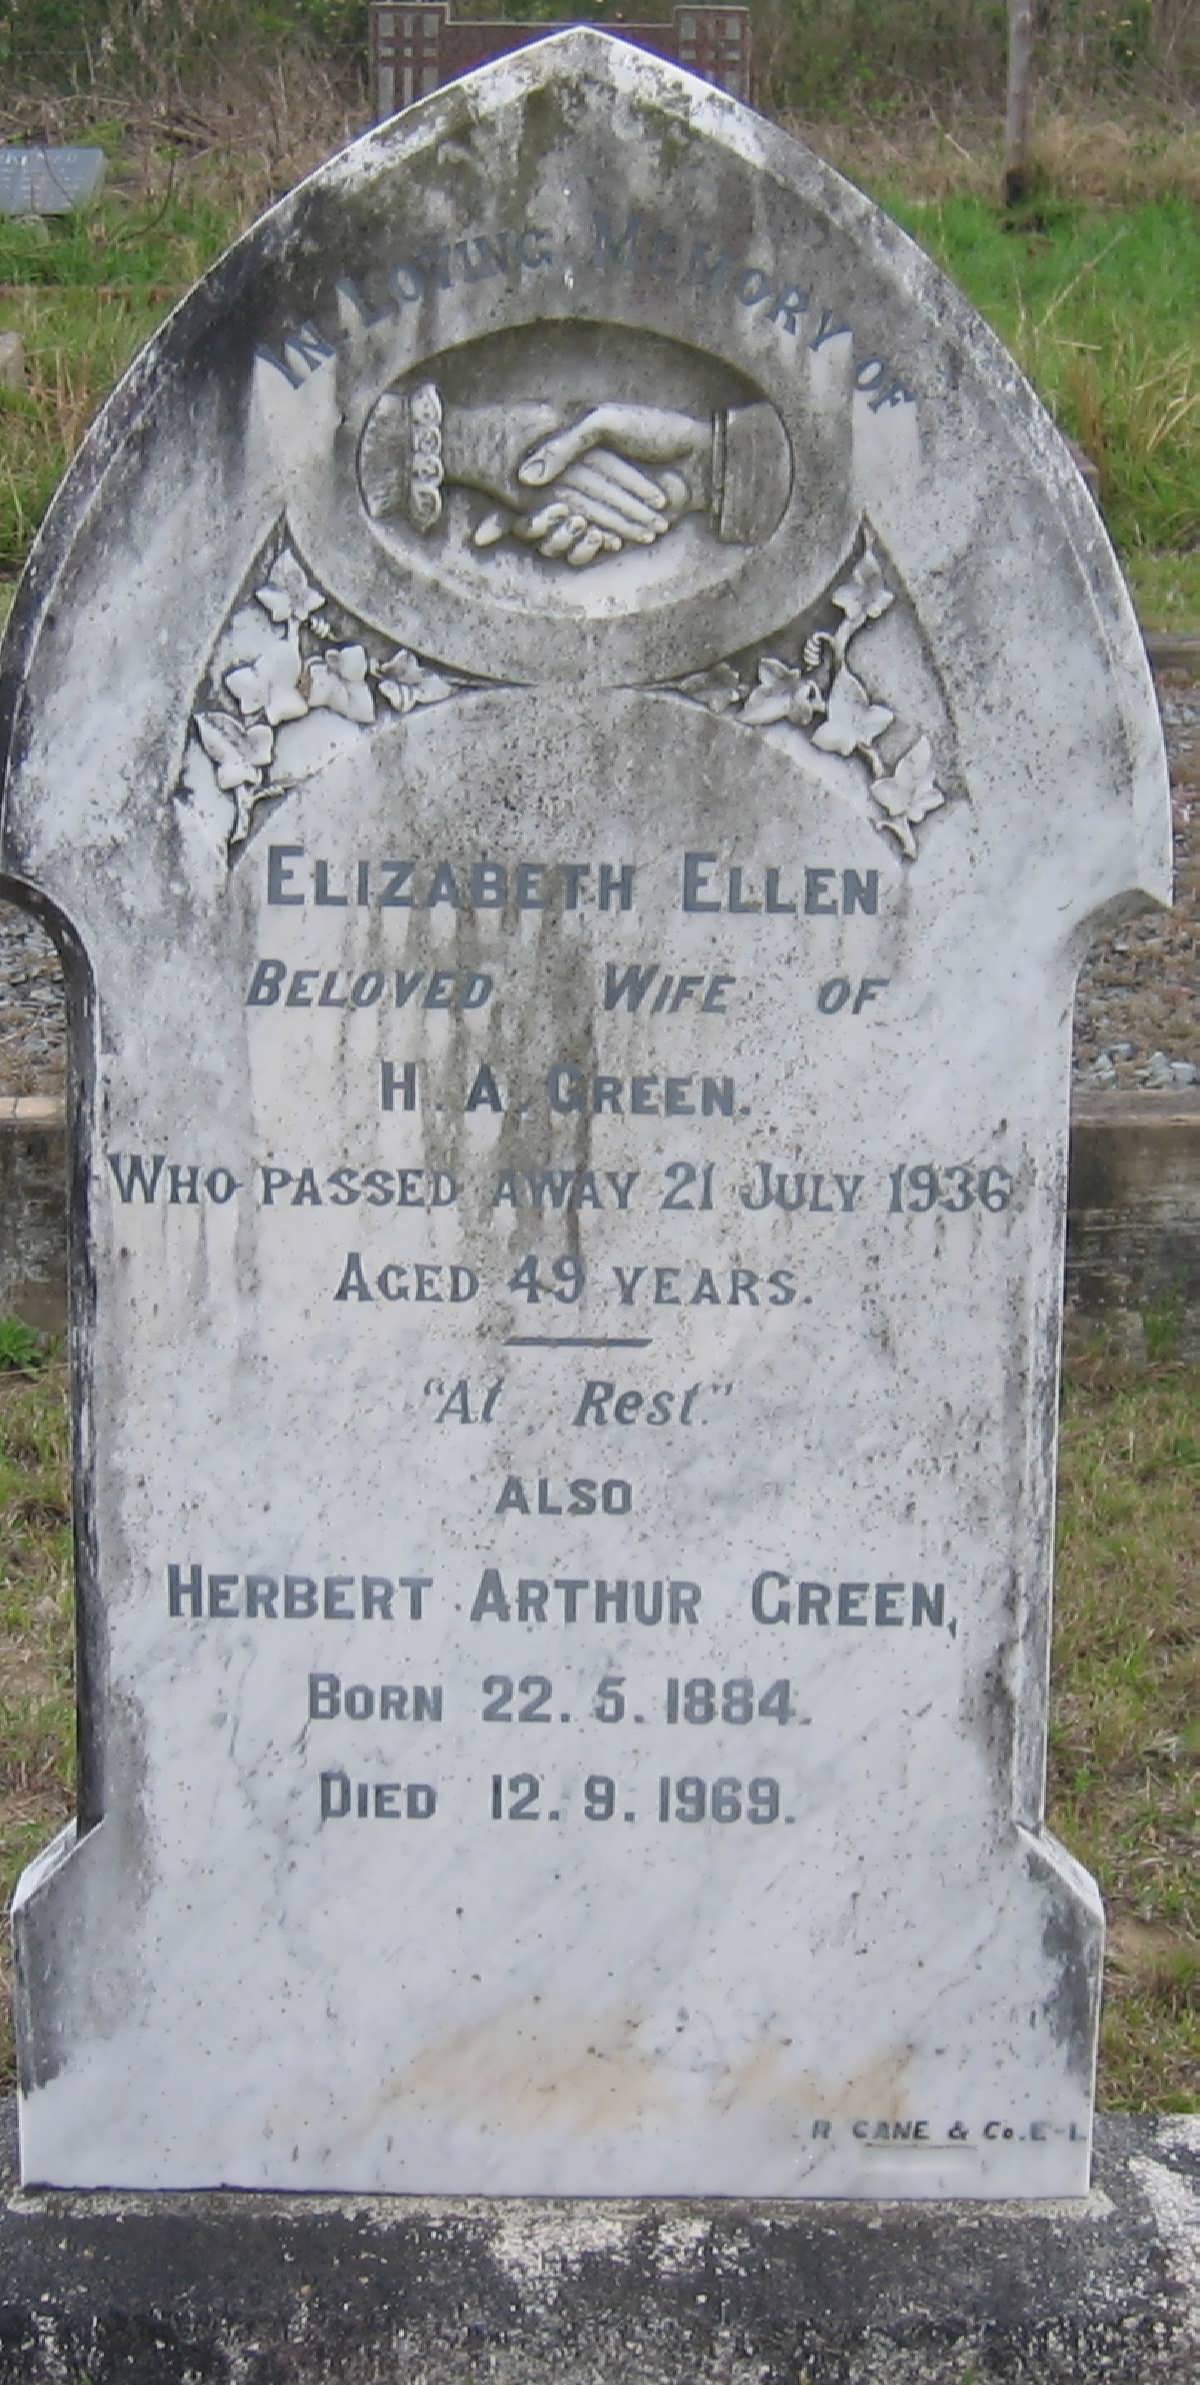 GREEN Herbert Arthur 1884-1969 & Elizabeth Ellen -1936